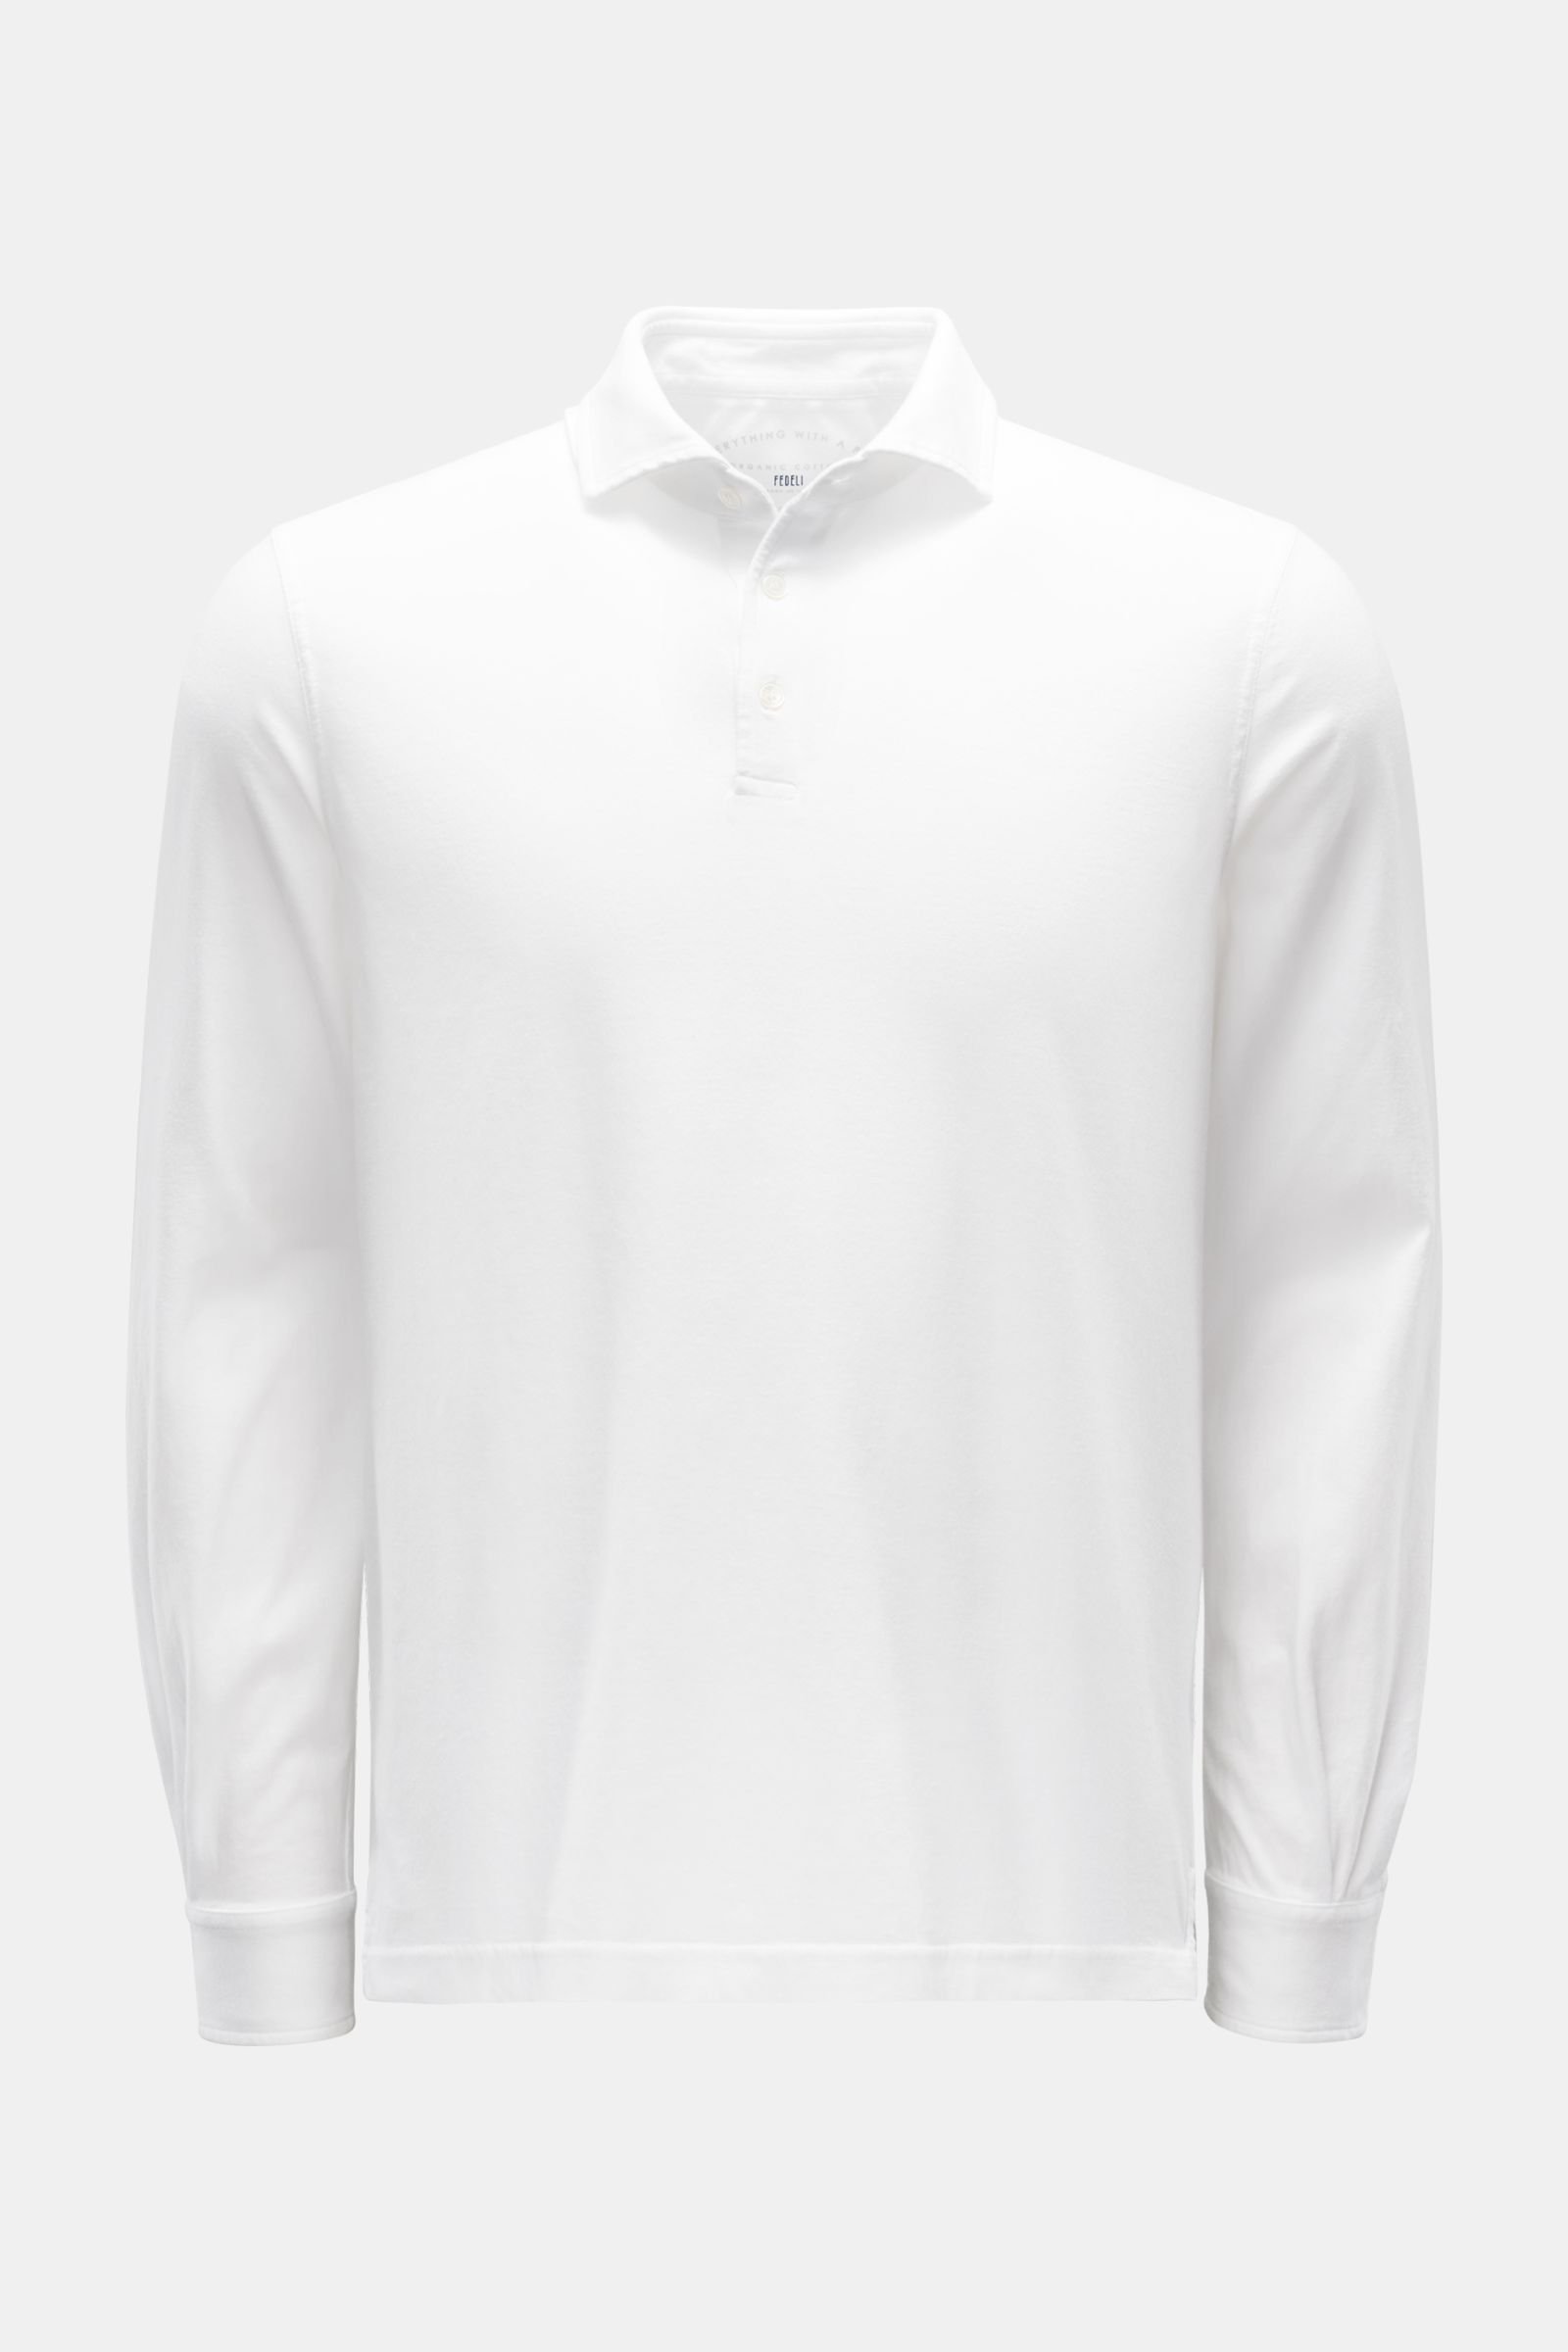 Jersey Longsleeve-Poloshirt 'Zero' weiß